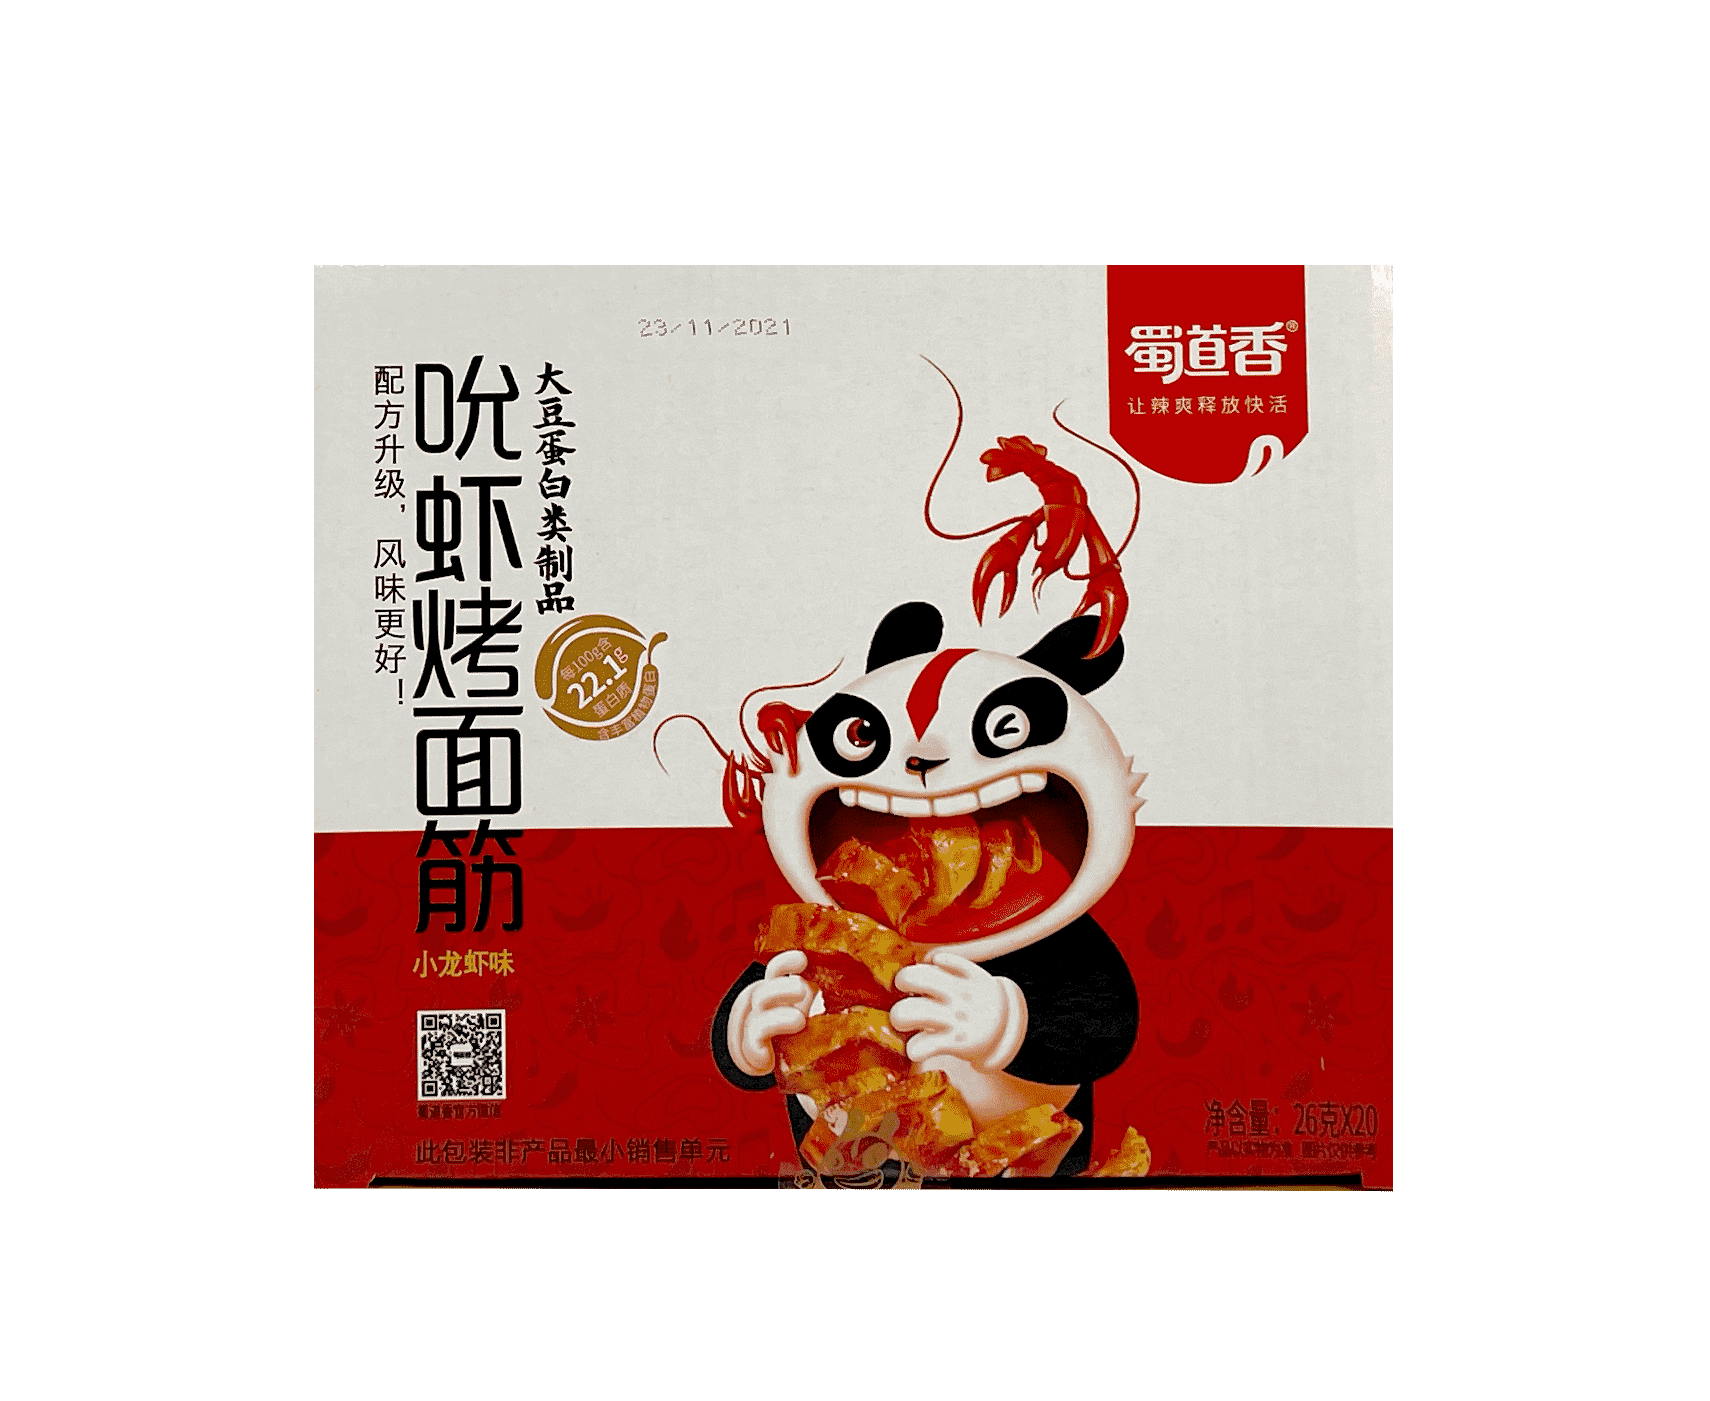 吮虾烤面筋 小龙虾味 26gx20st/盒 蜀道香 中国